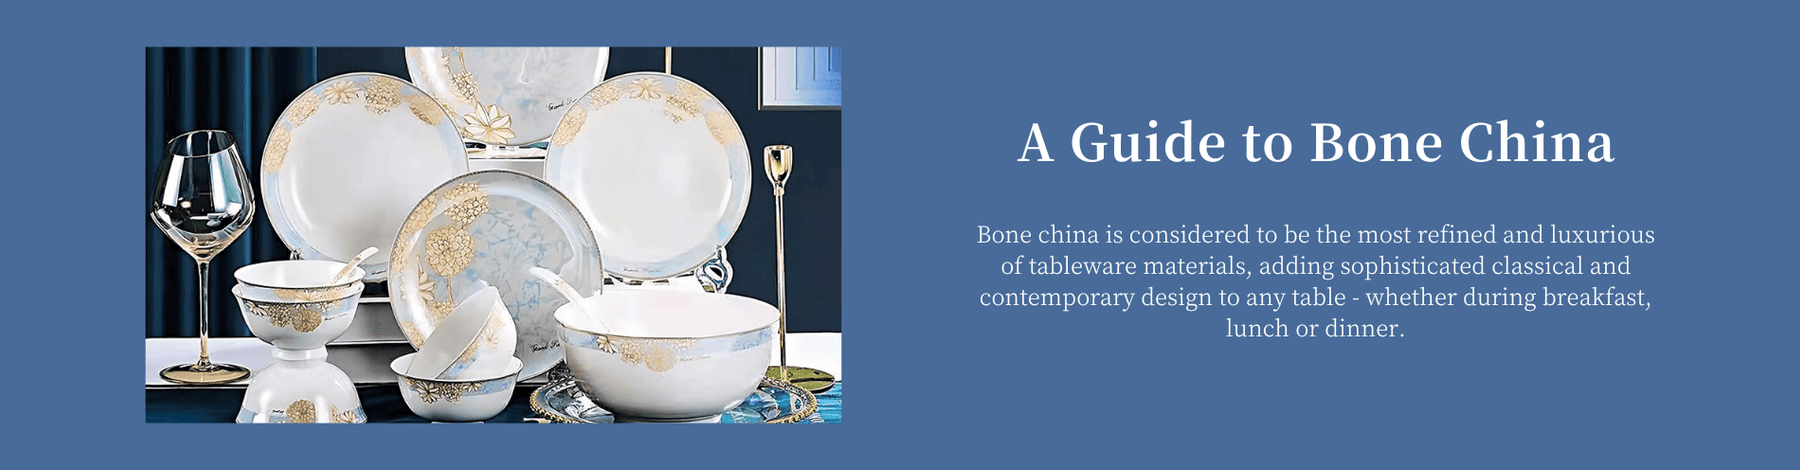 A Guide to Bone China - HauSweet